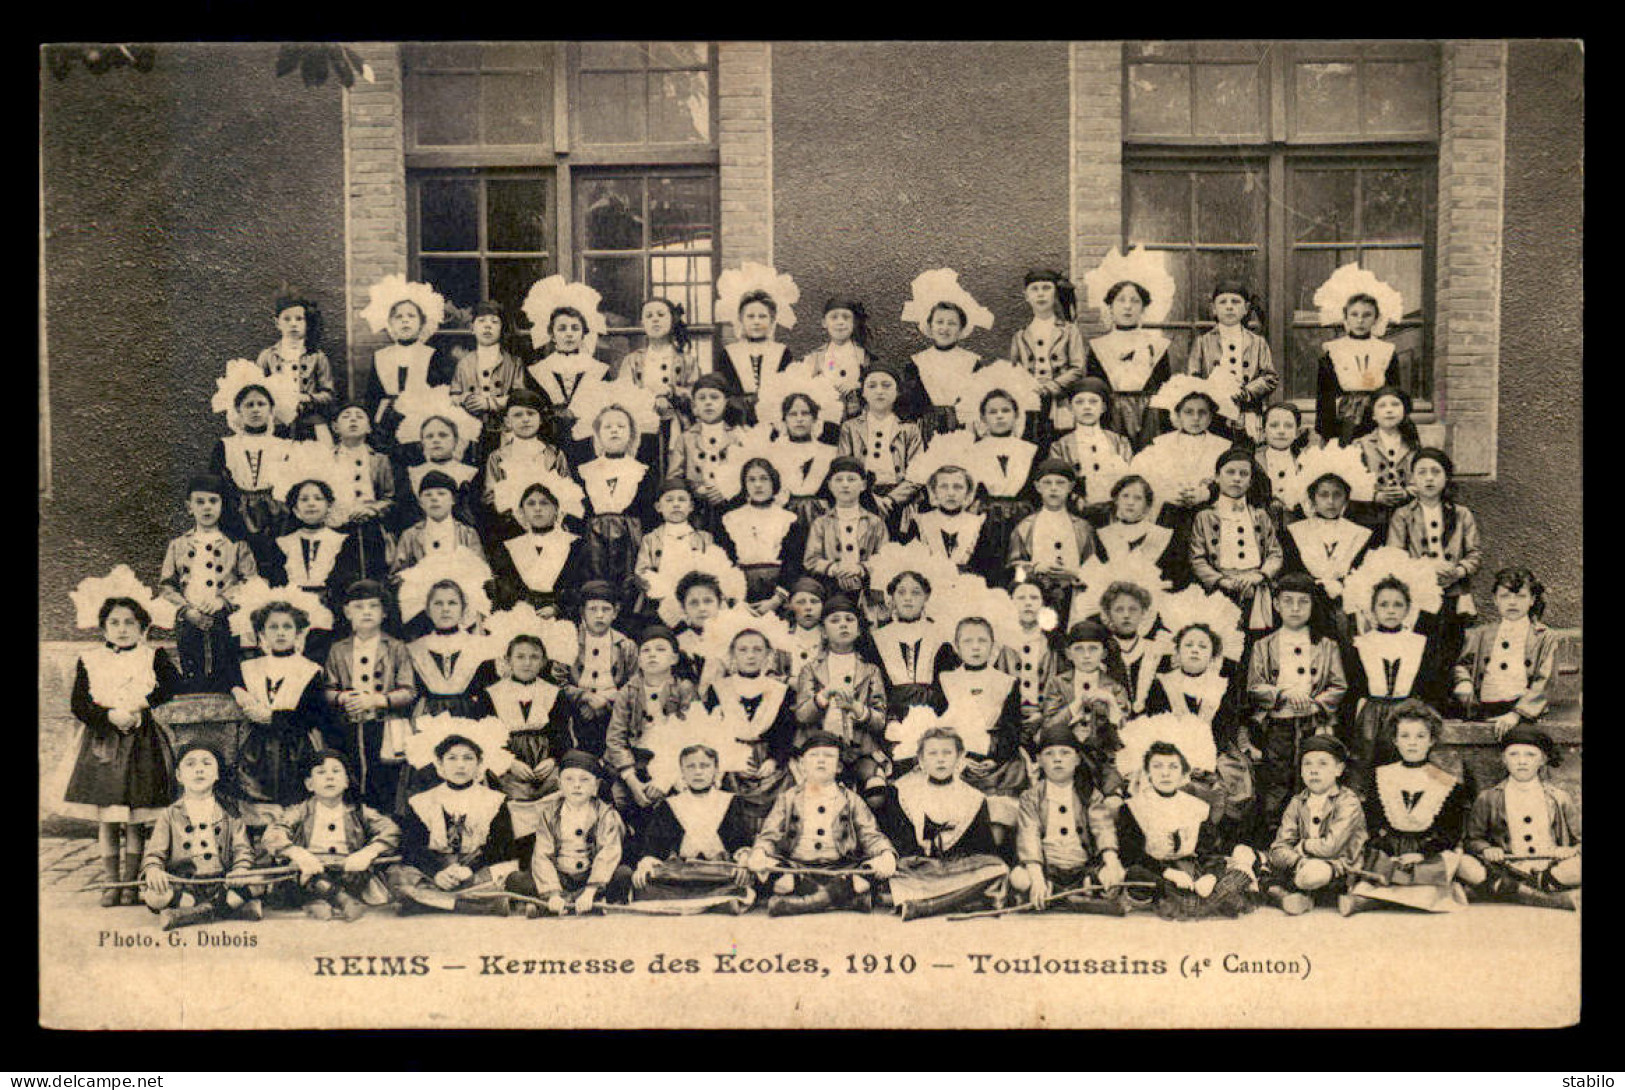 51 - REIMS - KERMESSE DES ECOLES 1910 - TOULOUSAINS 4E CANTON - Reims